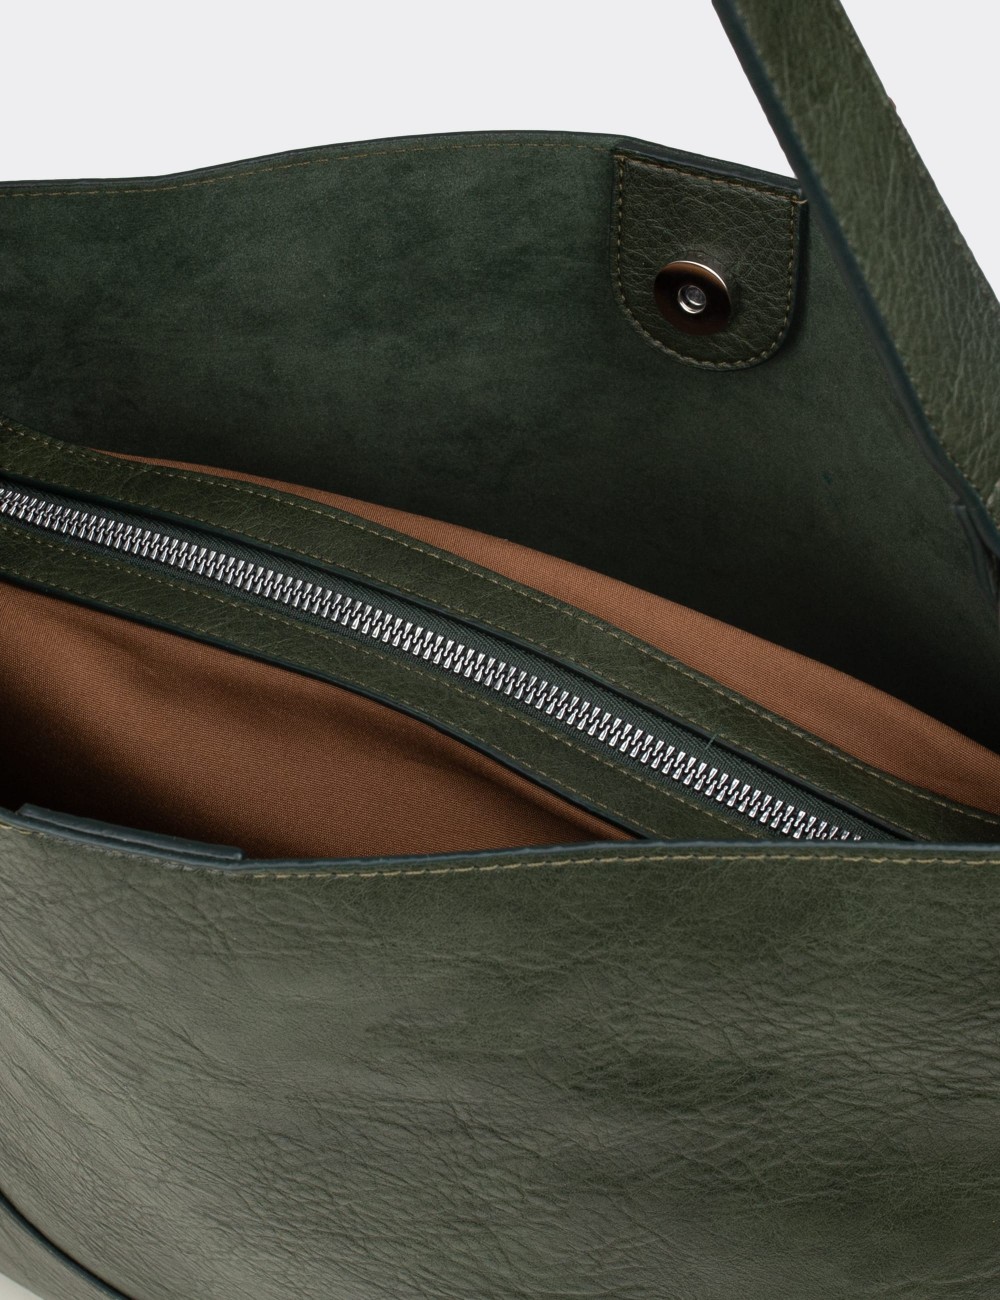 Green Shoulder Bag - JM428ZYSLY01